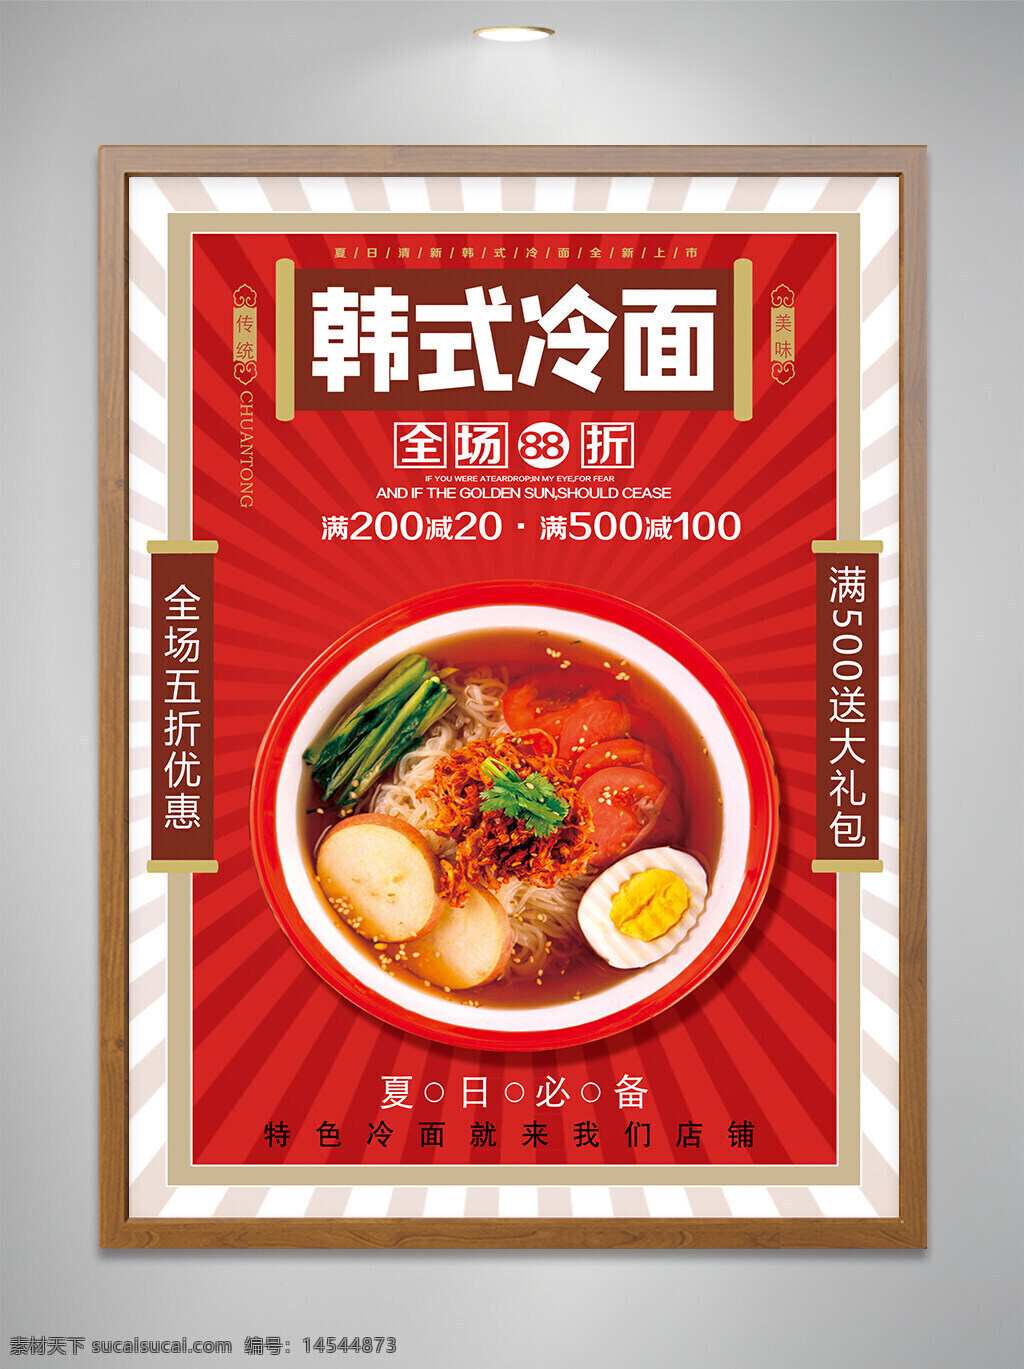 韩式 冷面 美食 宣传 设计 海报 五折 满减 优惠 宣传单页 宣传海报